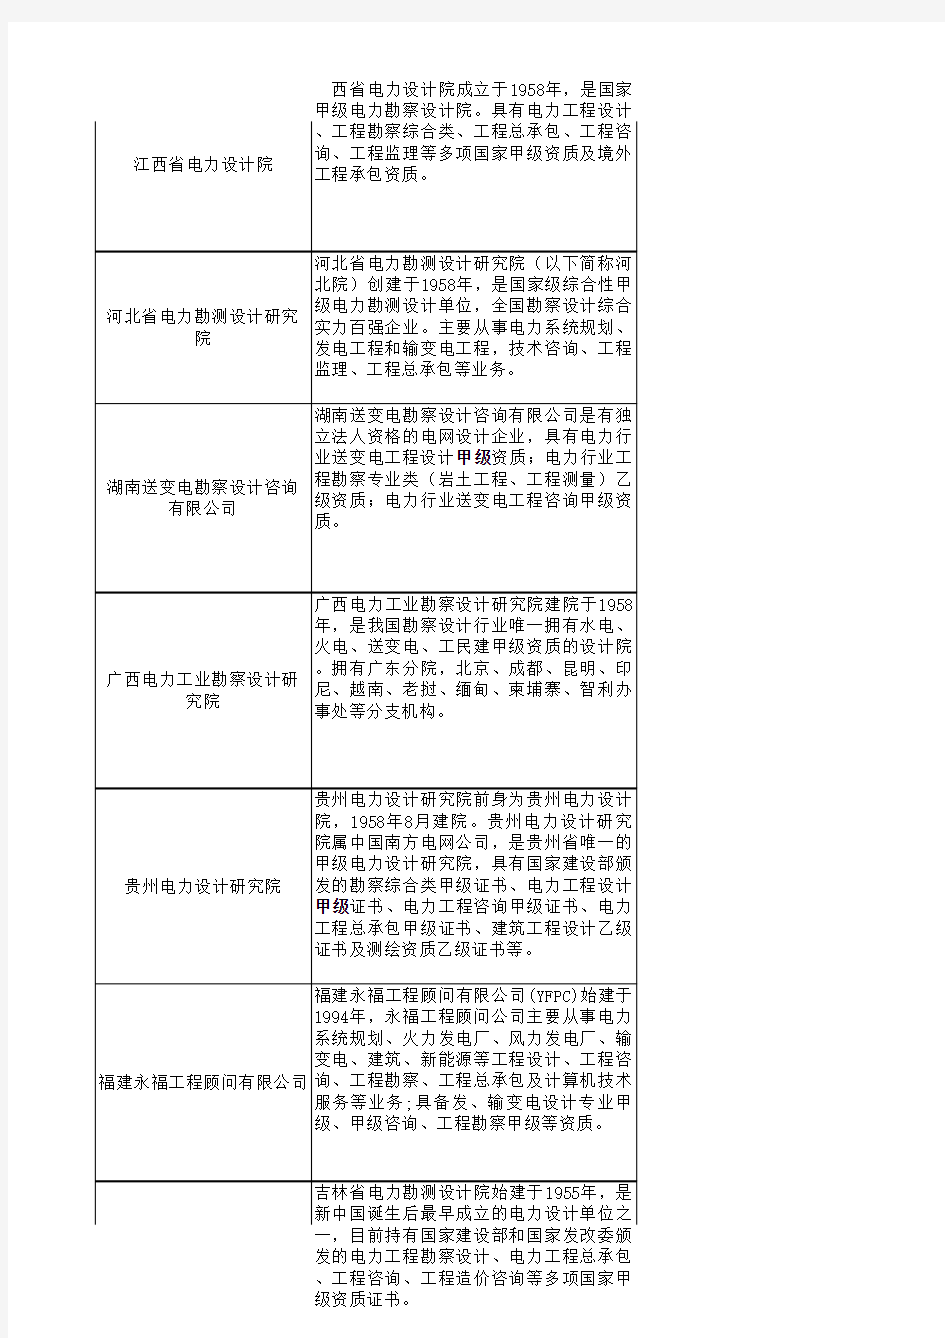 承建广东电网公司系统电网建设工程企业名单(2011年)